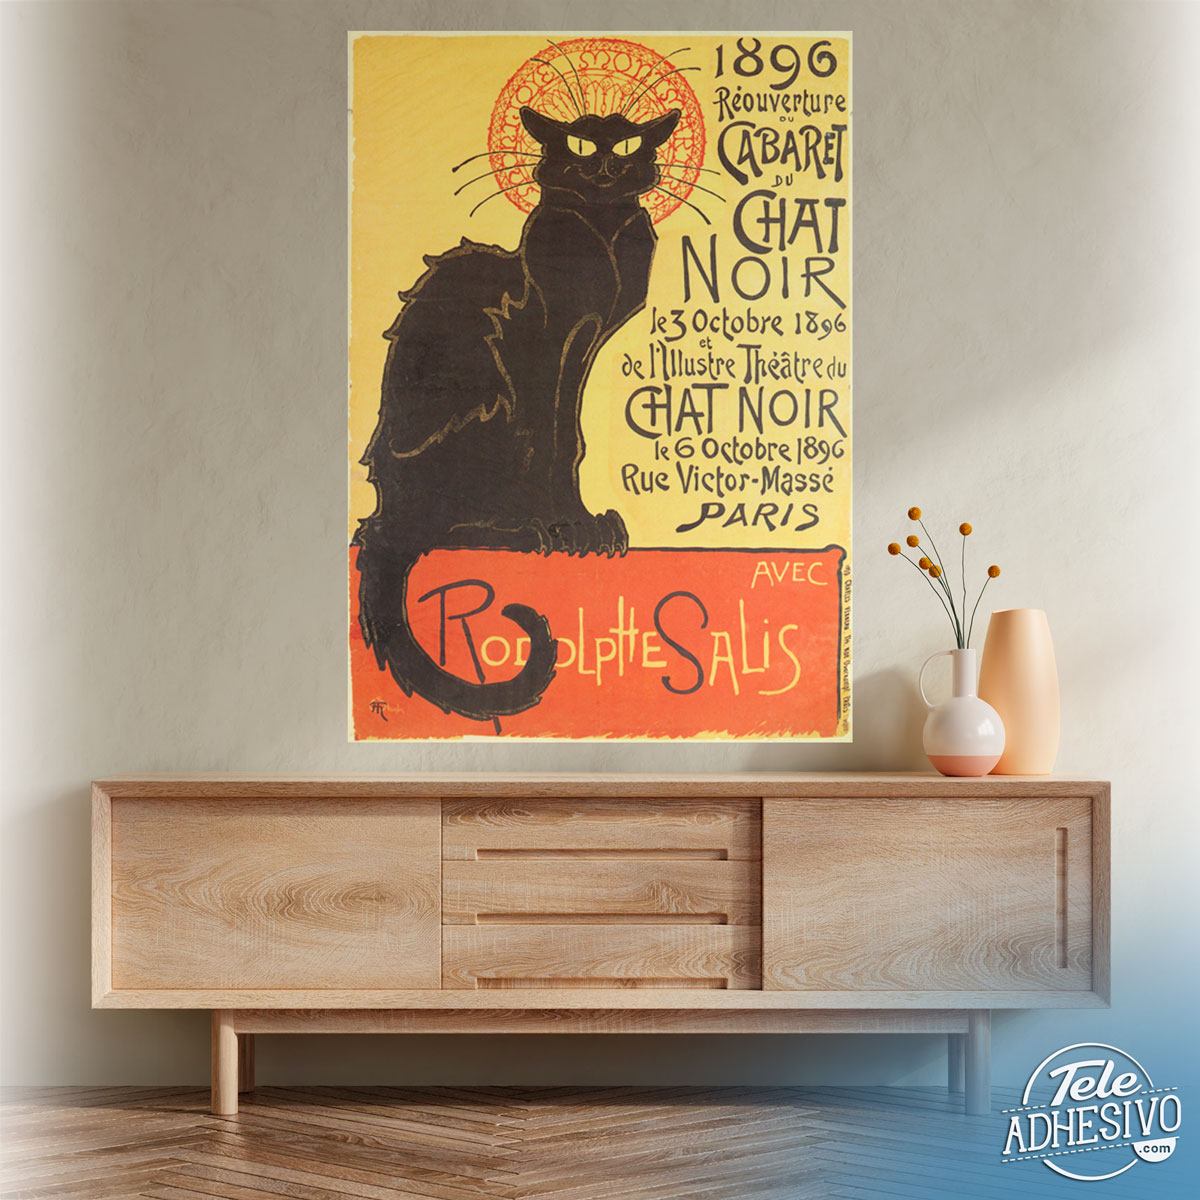 Vinilos Decorativos: Le Chat Noir